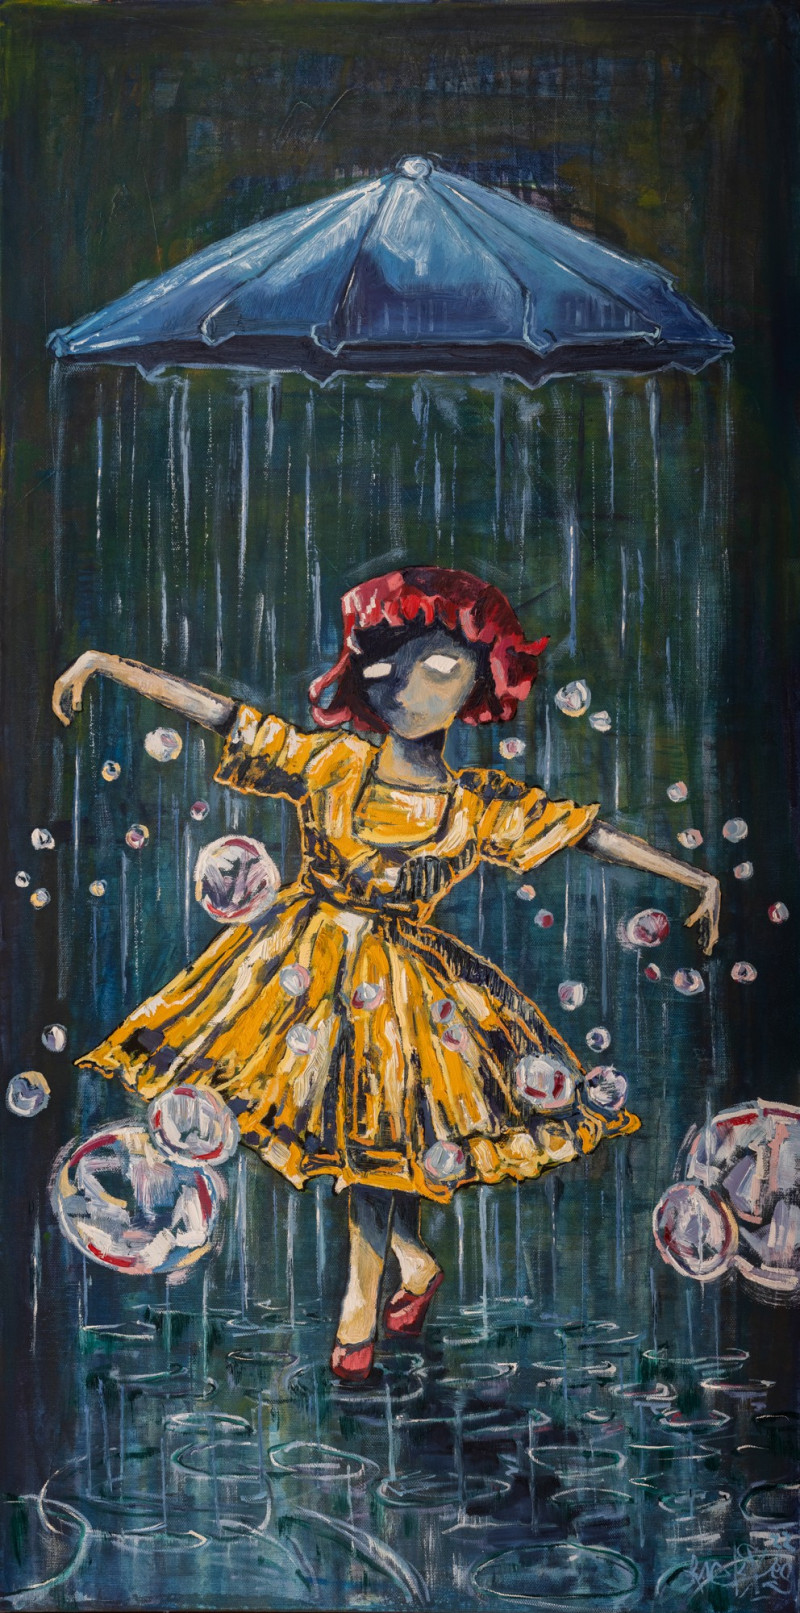 Mindaugas Pupelis tapytas paveikslas Švęsk džiaugsmą, kol tamsa nesibaigė, Jauni ir talentingi , paveikslai internetu